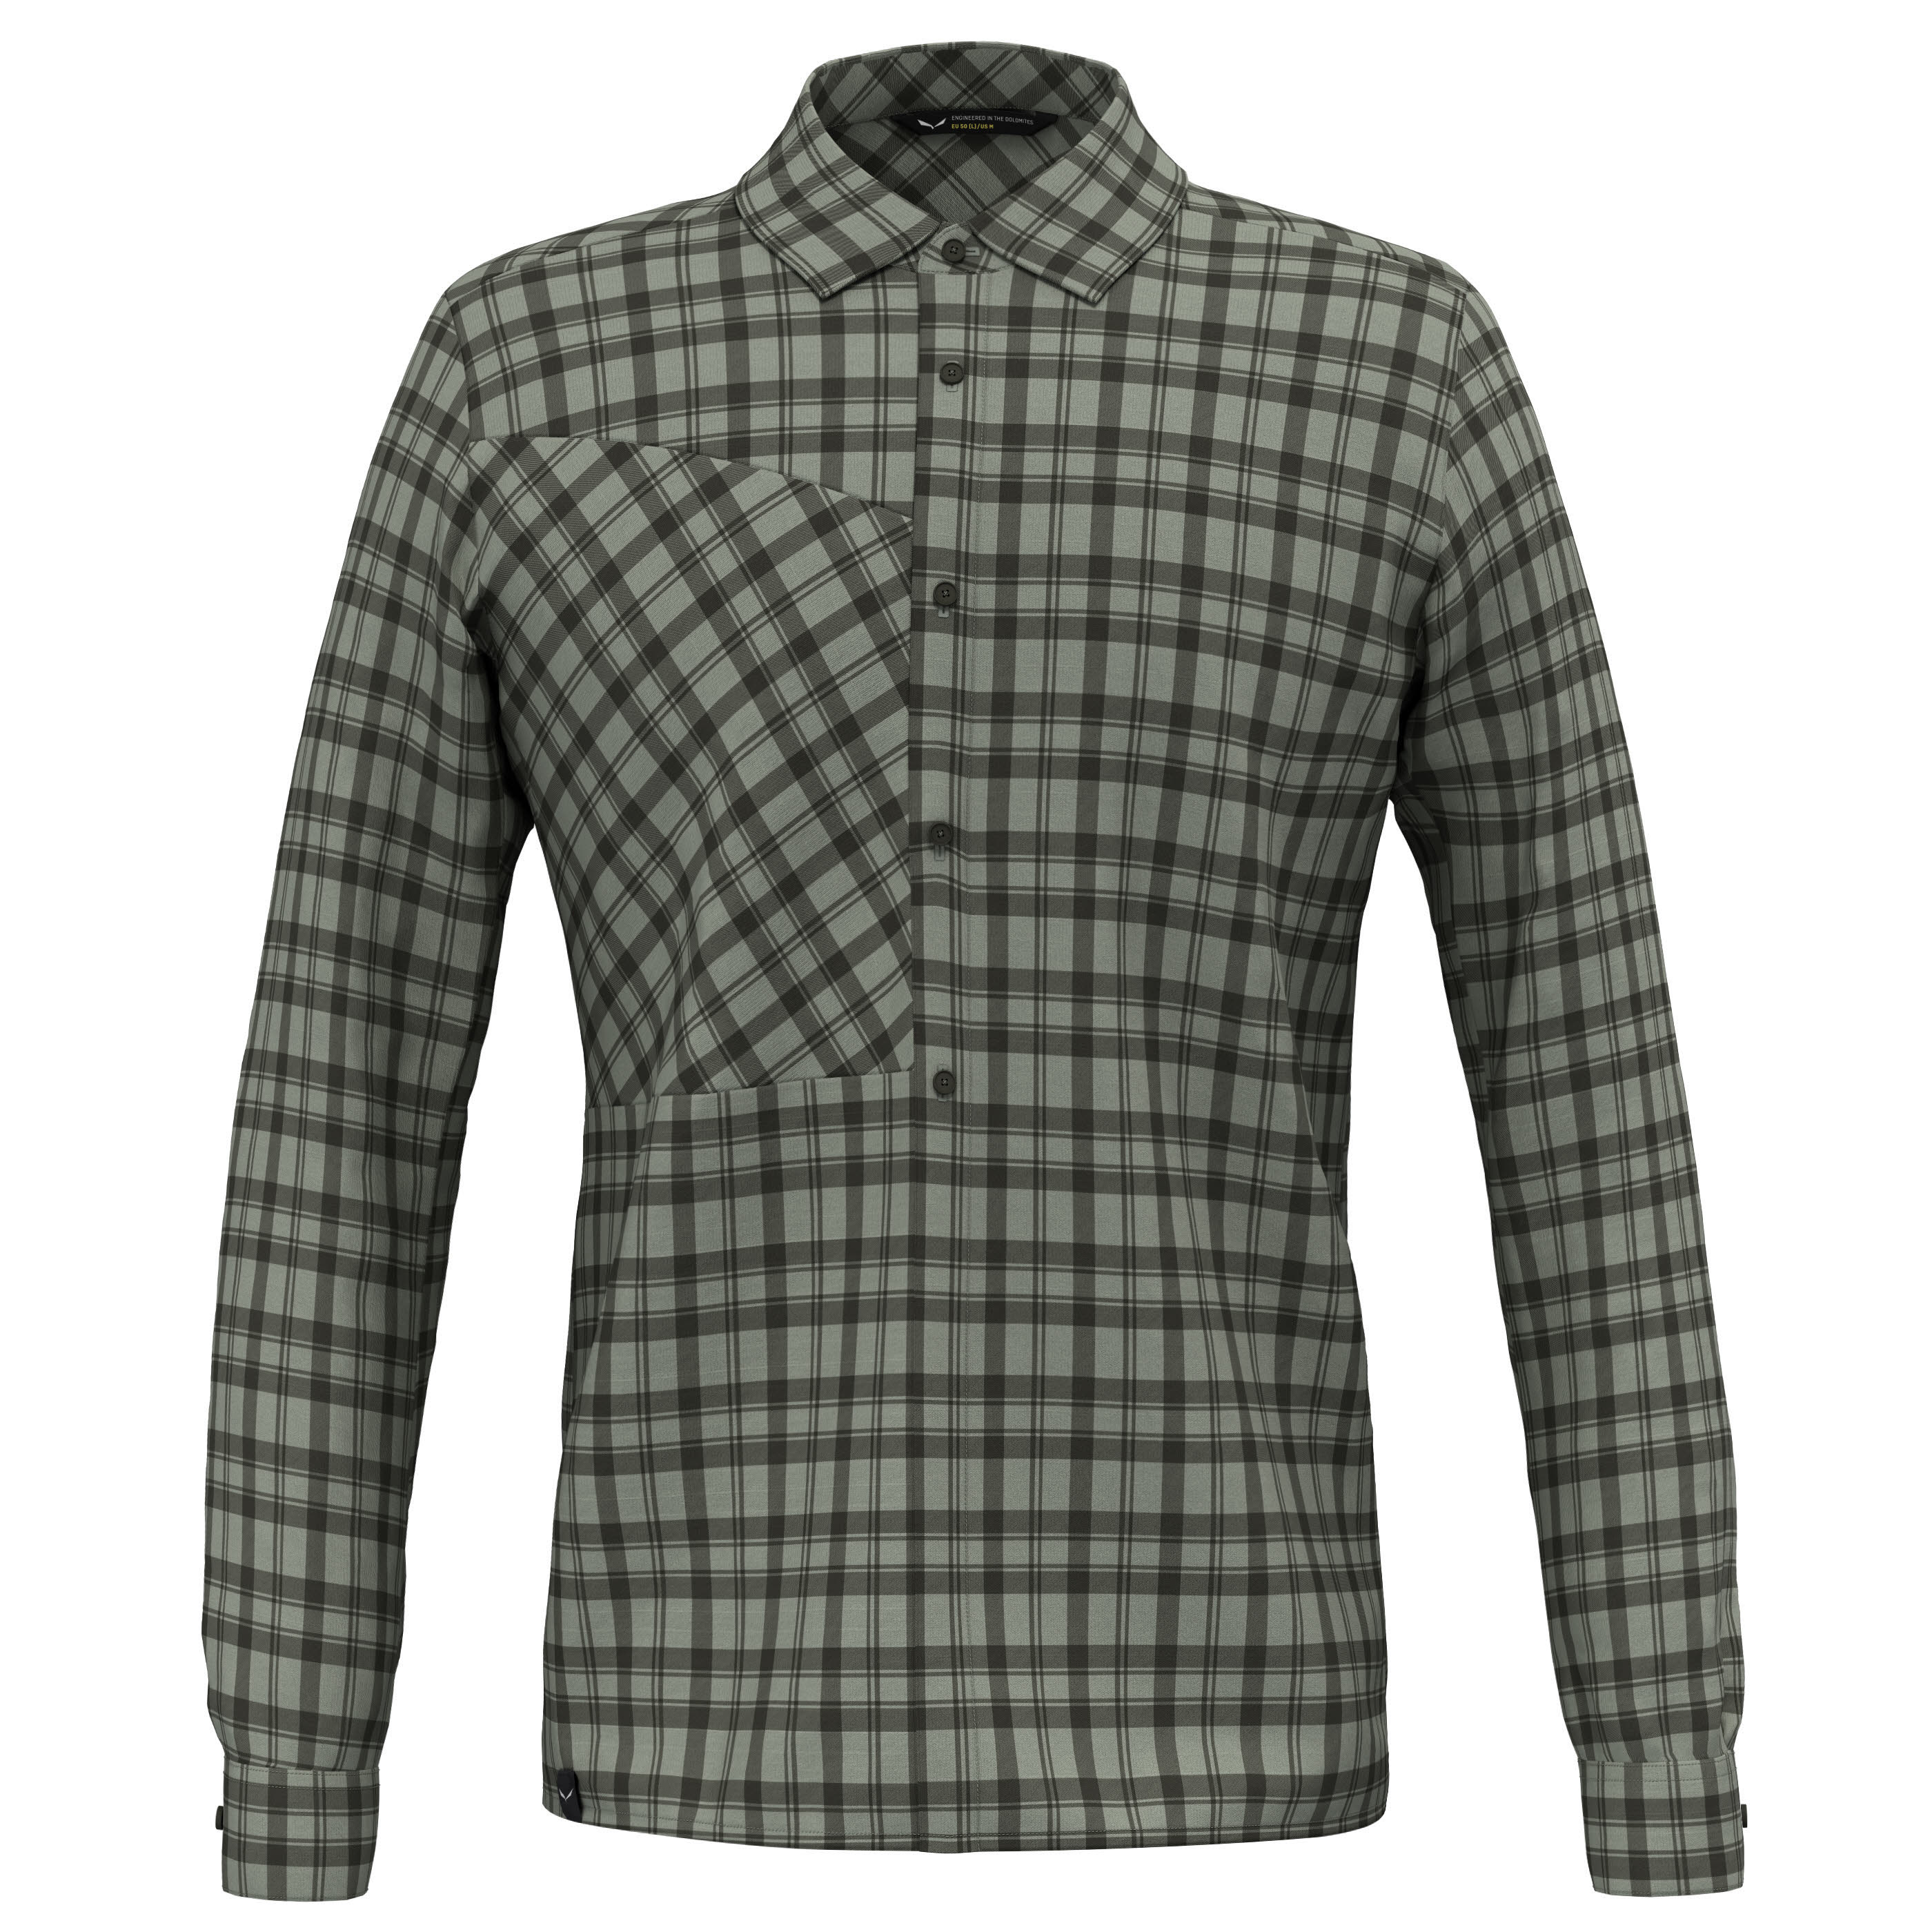 Salewa Fanes Flannel 5 Polarlite Herren Hemd Flannelhemd Trekkinghemd grün